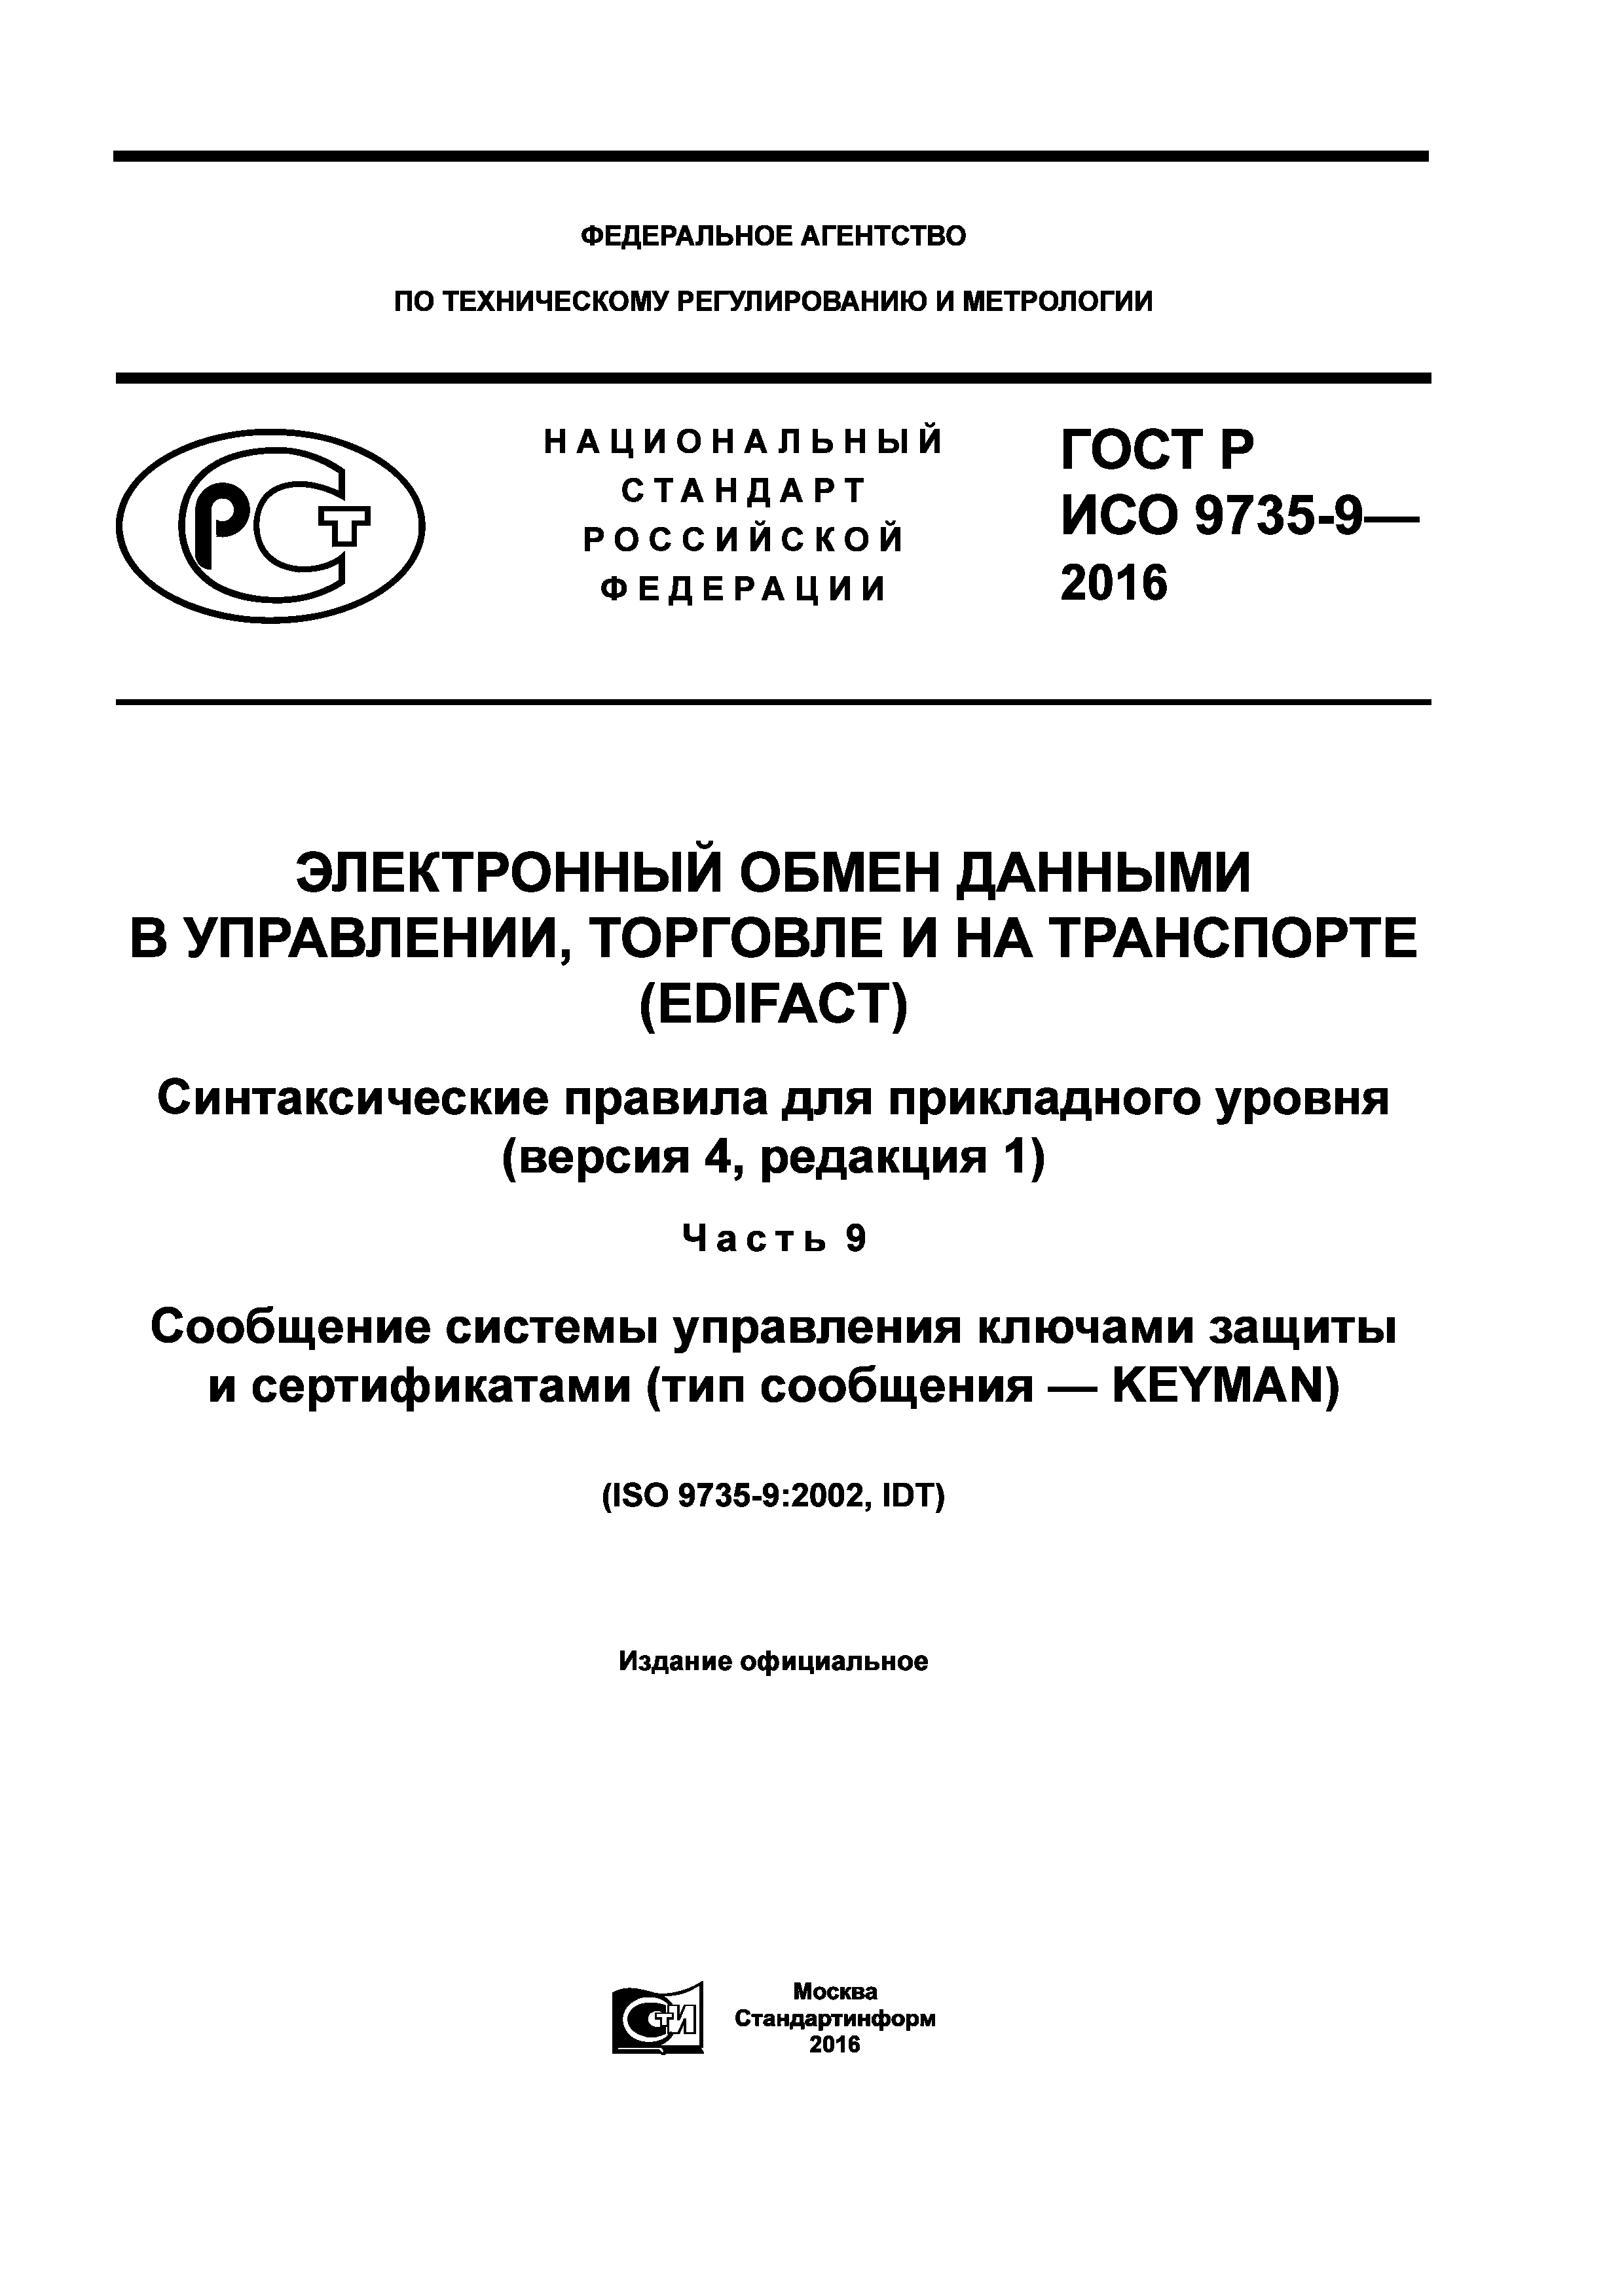 ГОСТ Р ИСО 9735-9-2016